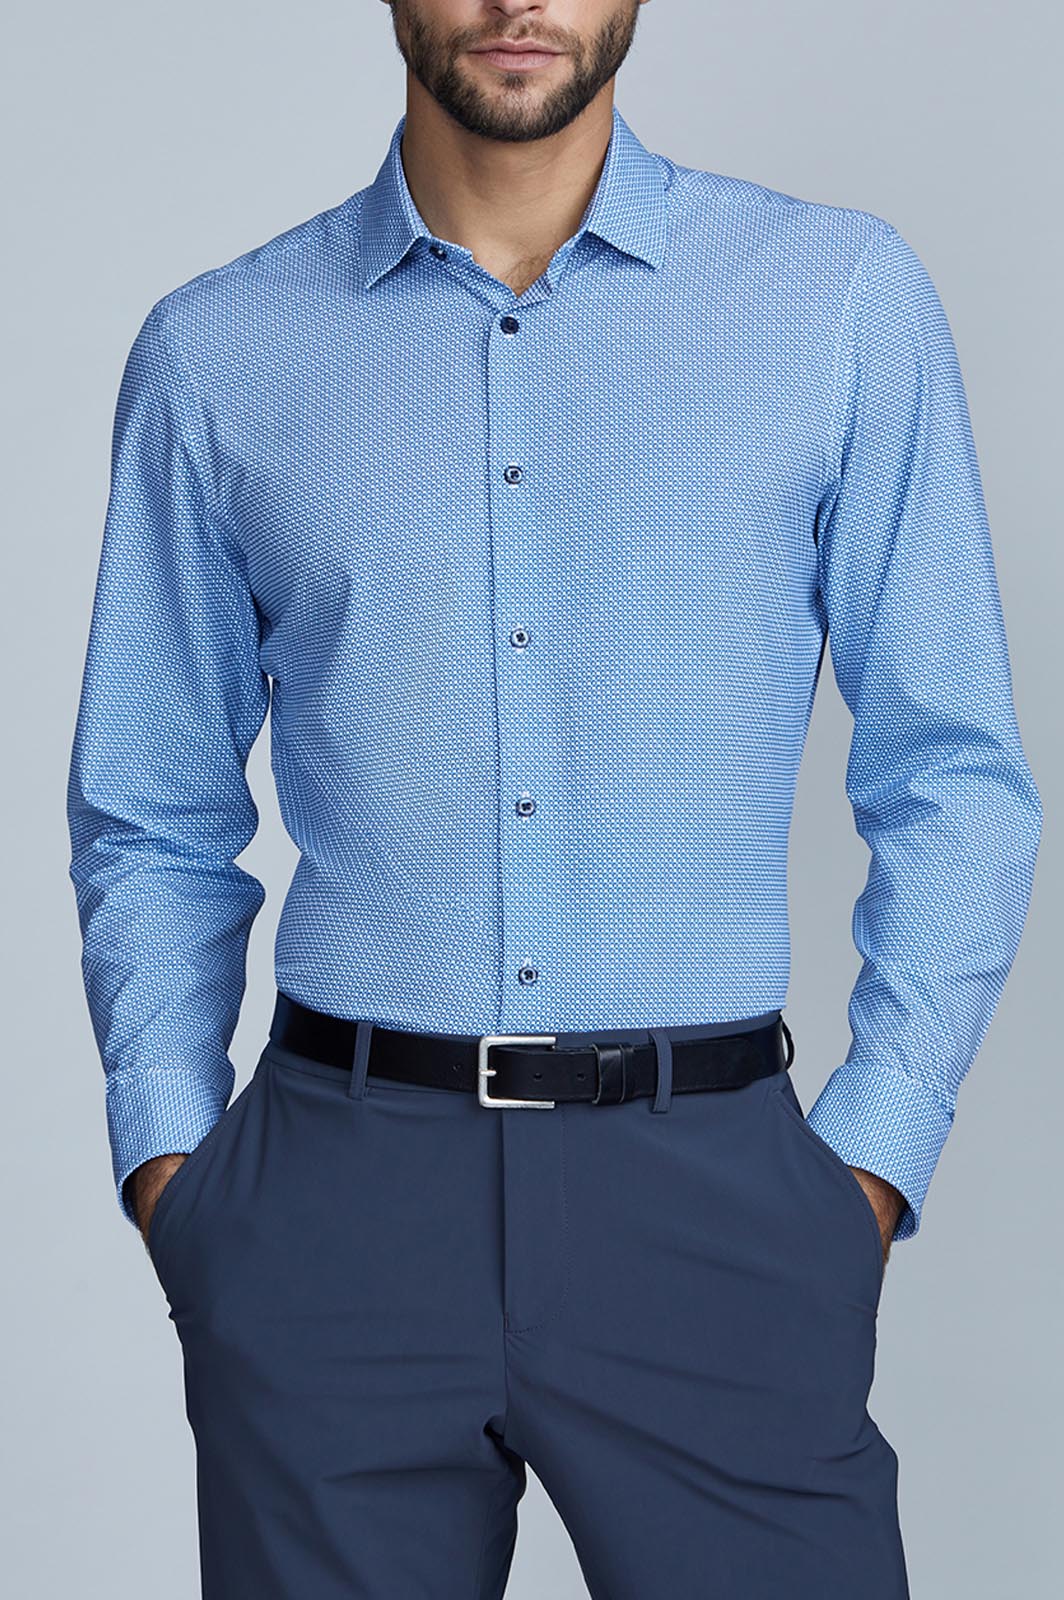 Men's Light Blue Long Sleeve Dress Shirt - State of Matter Apparel